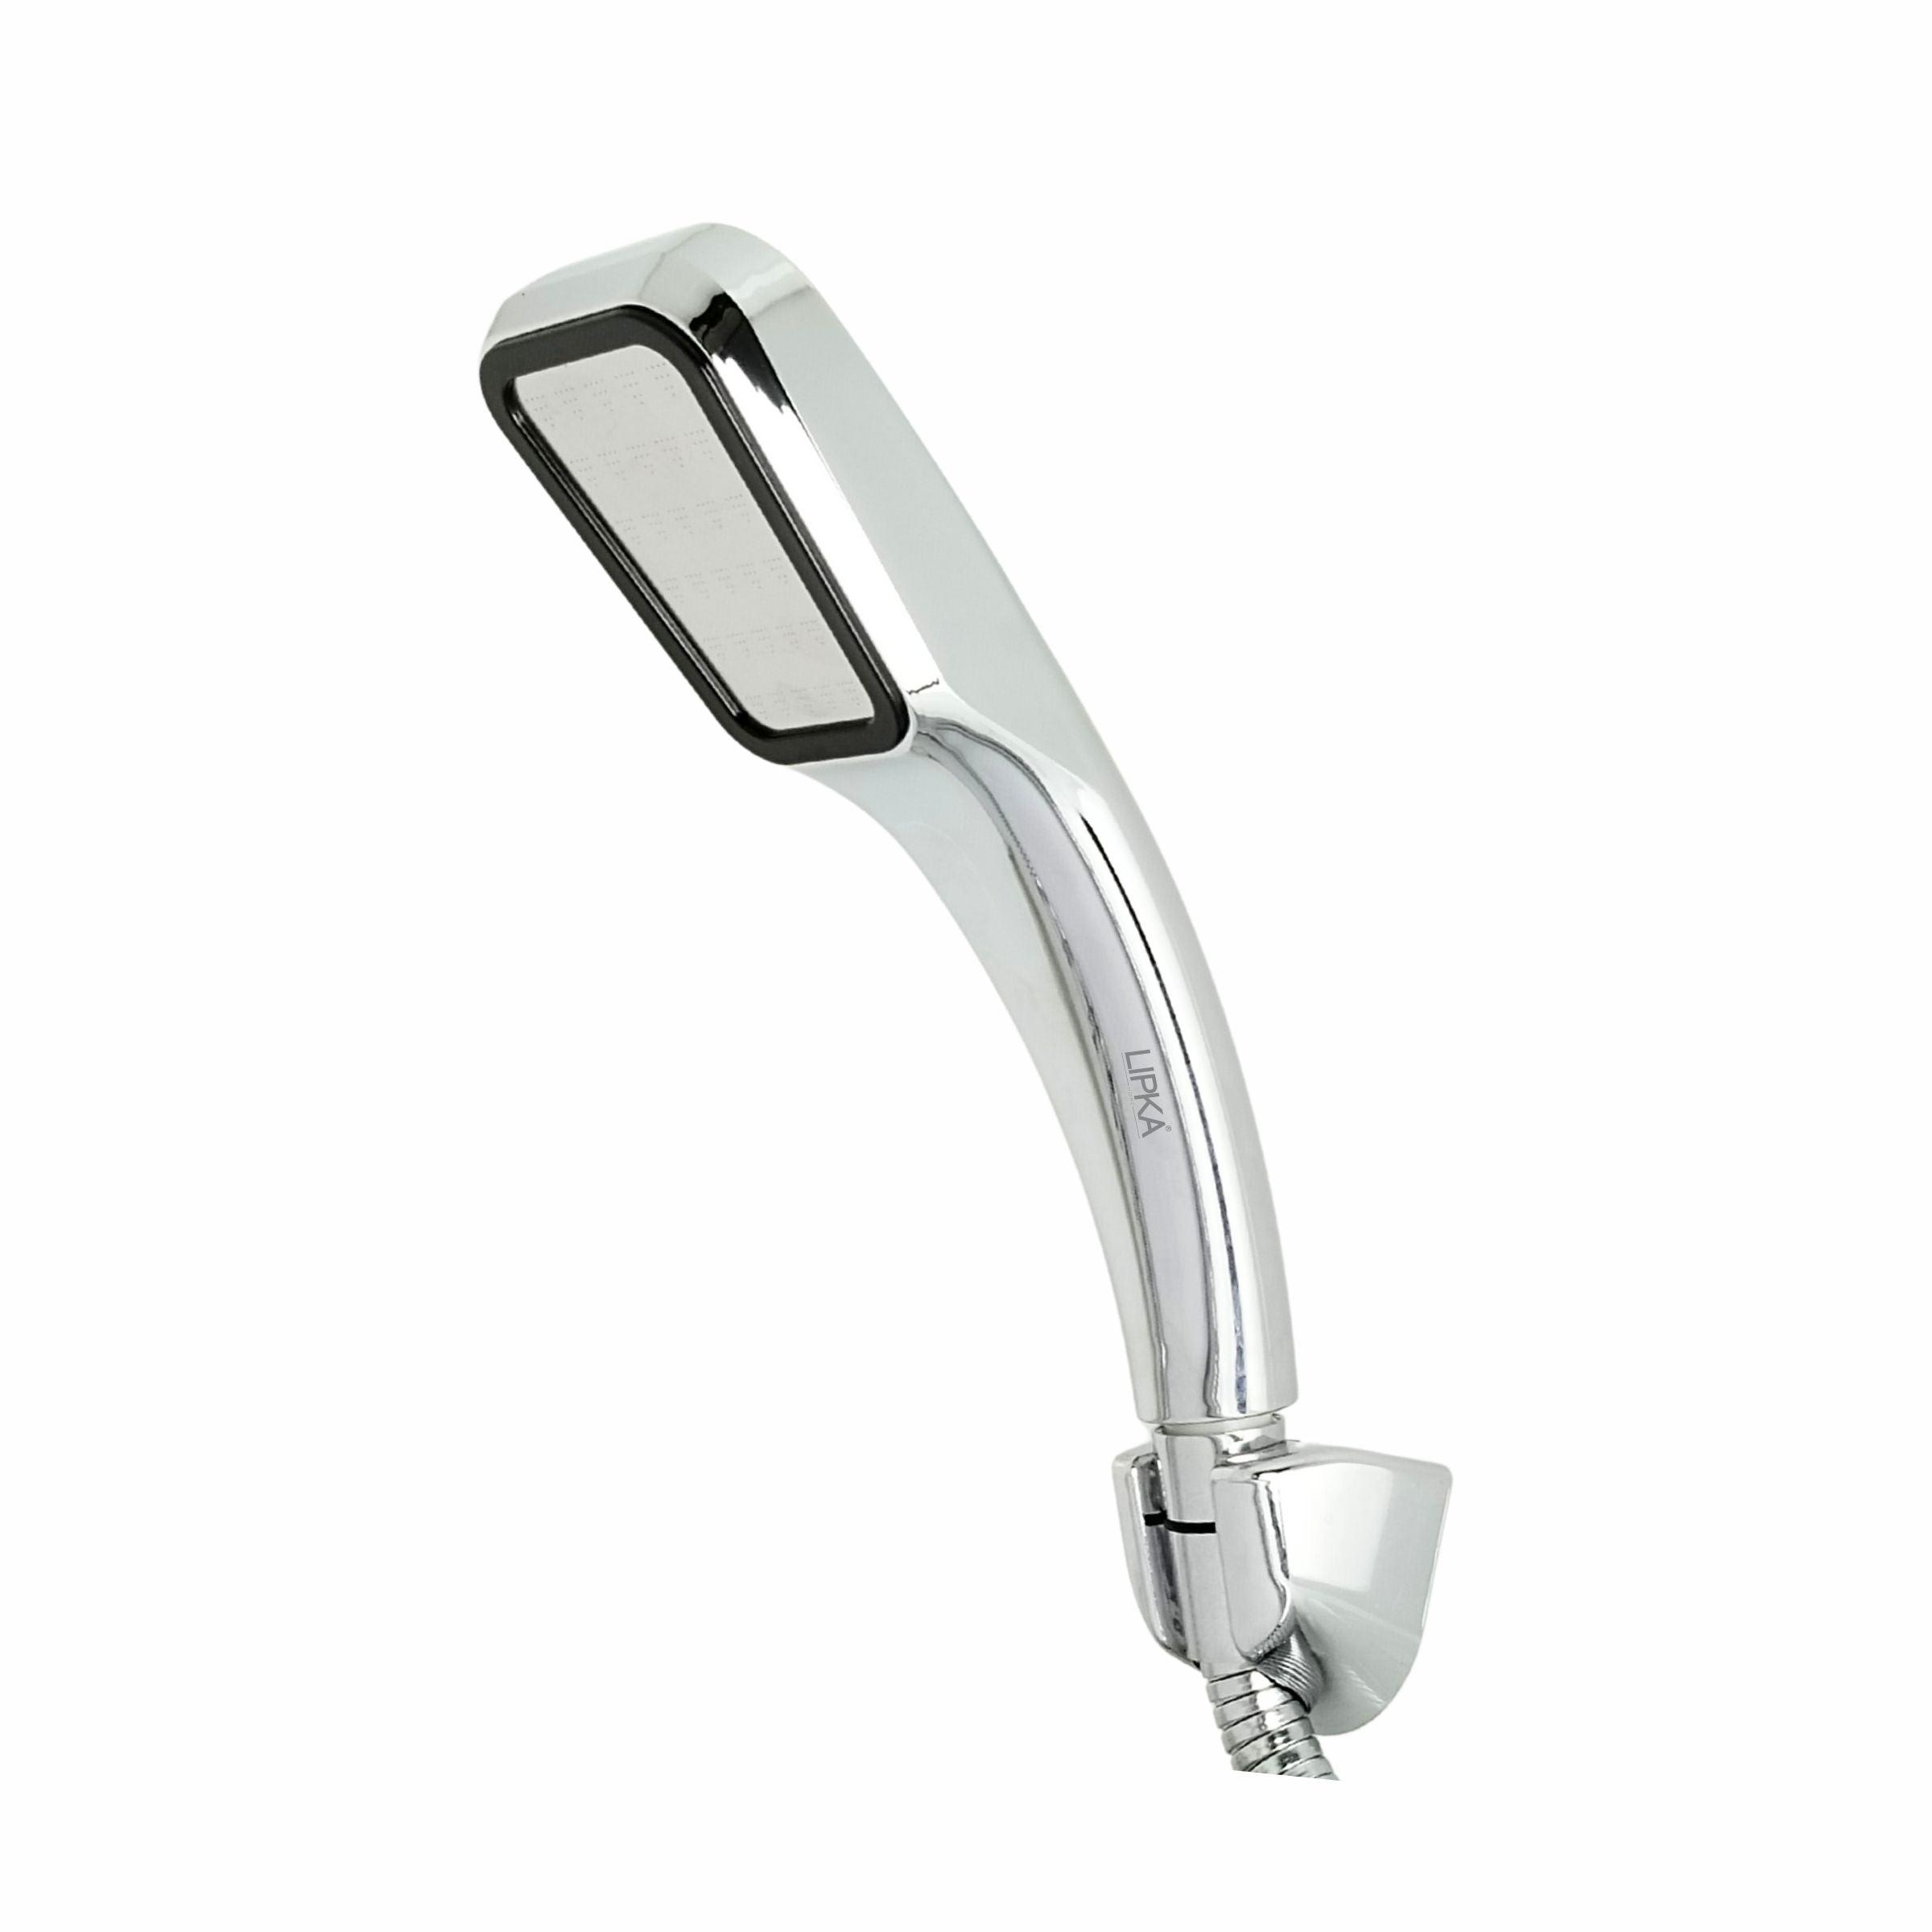 Twist Hand Shower with Holder & 304-Grade Flexible Shower Tube - LIPKA - Lipka Home